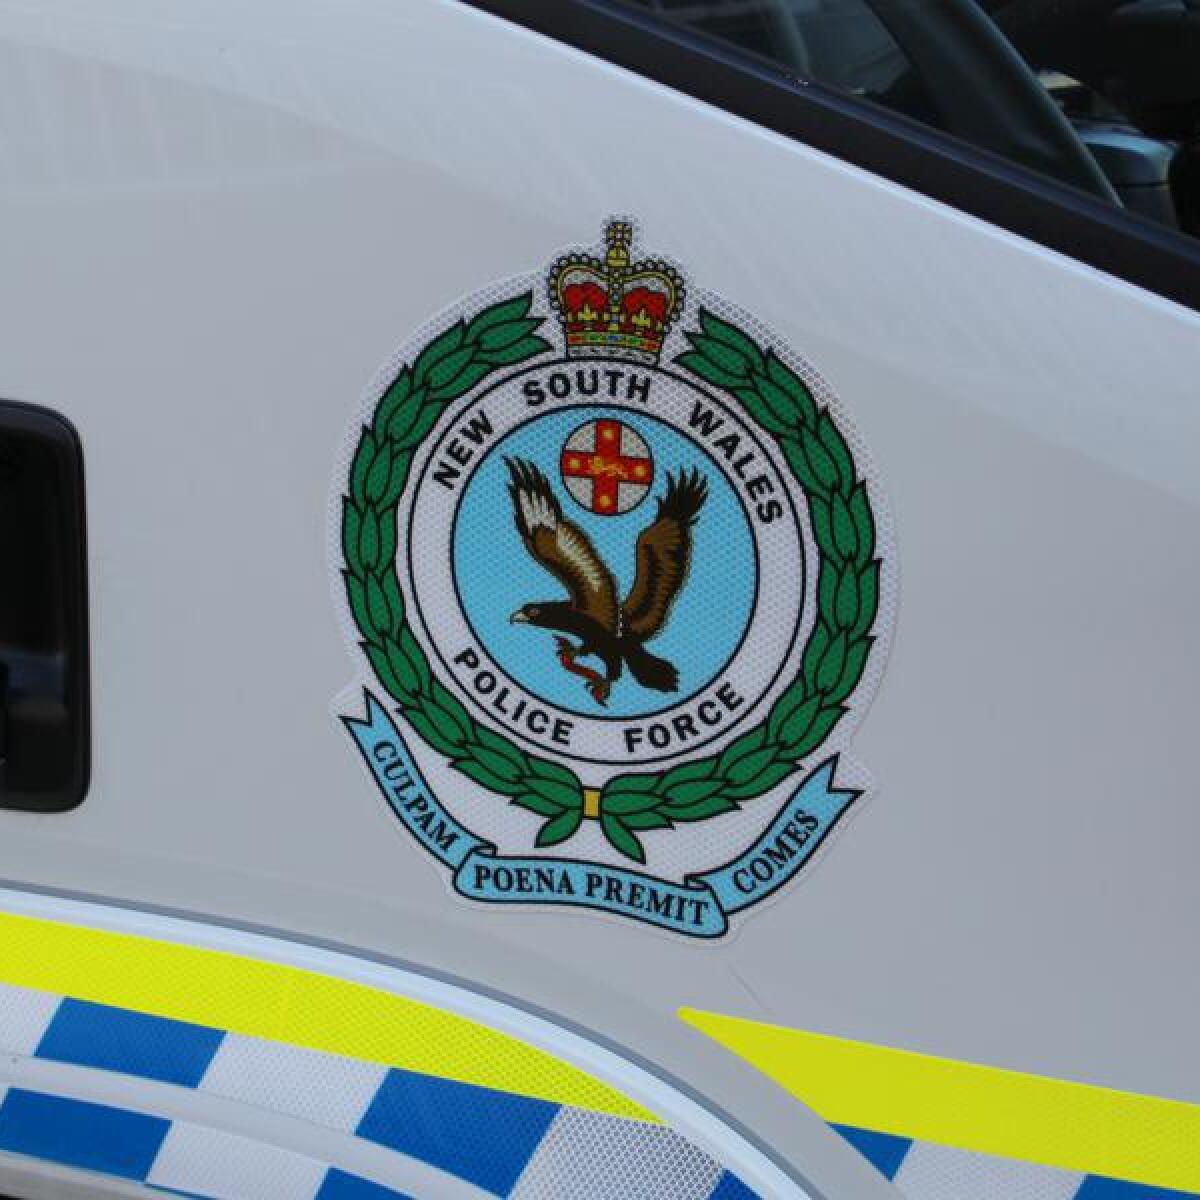 A NSW Police logo.